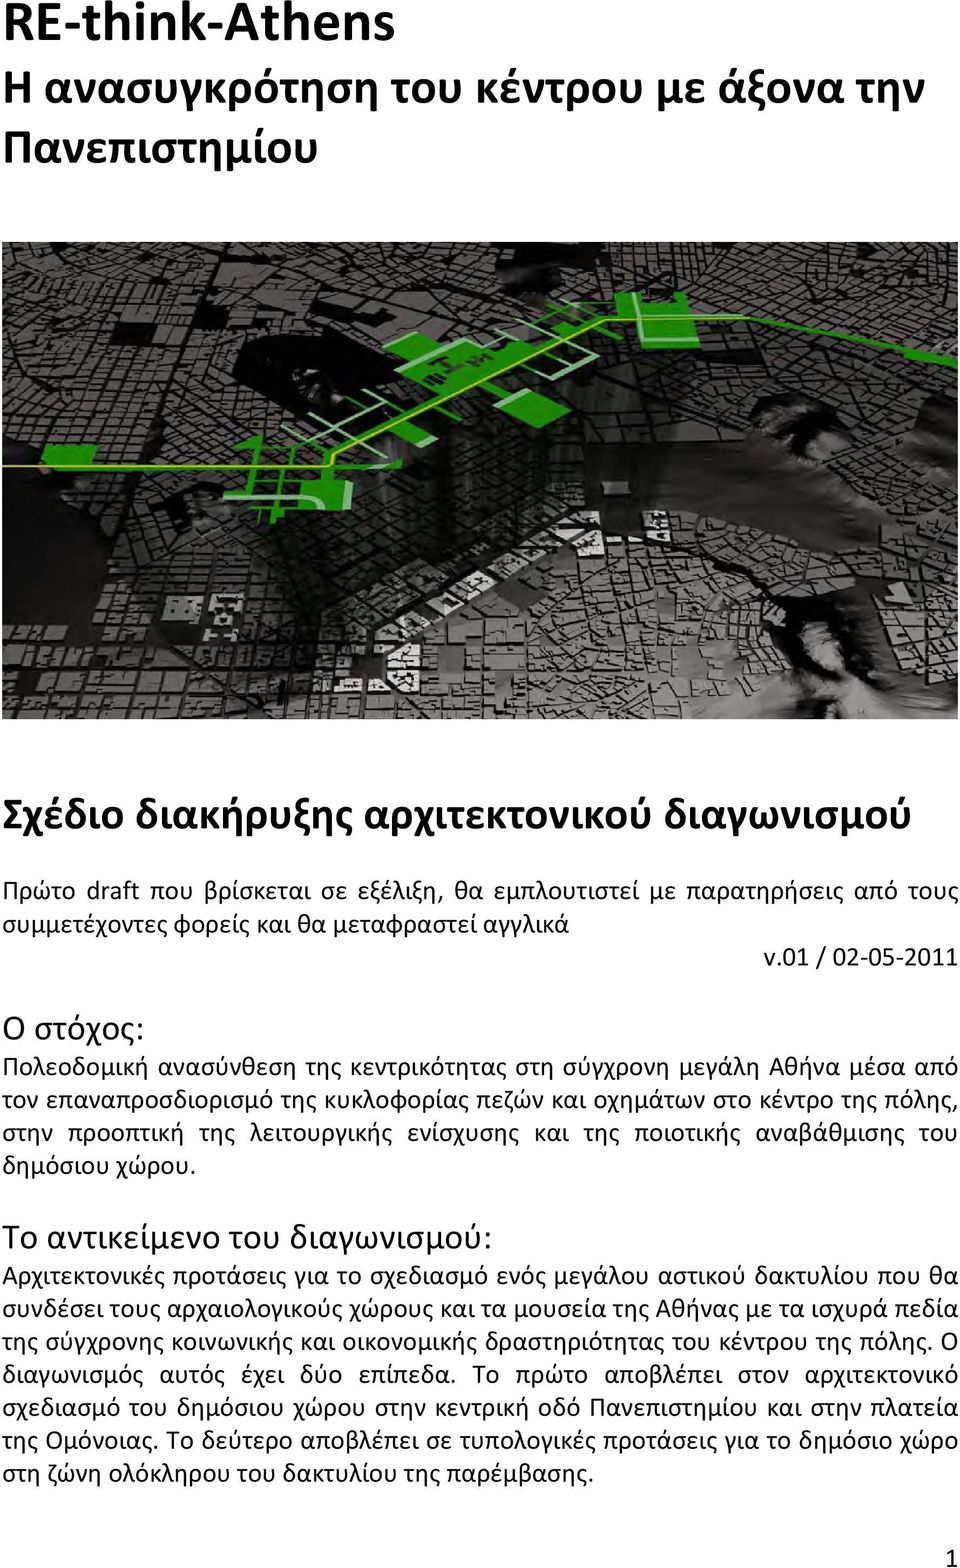 01 / 02-05-2011 Ο στόχος: Πολεοδομική ανασύνθεση της κεντρικότητας στη σύγχρονη μεγάλη Αθήνα μέσα από τον επαναπροσδιορισμό της κυκλοφορίας πεζών και οχημάτων στο κέντρο της πόλης, στην προοπτική της